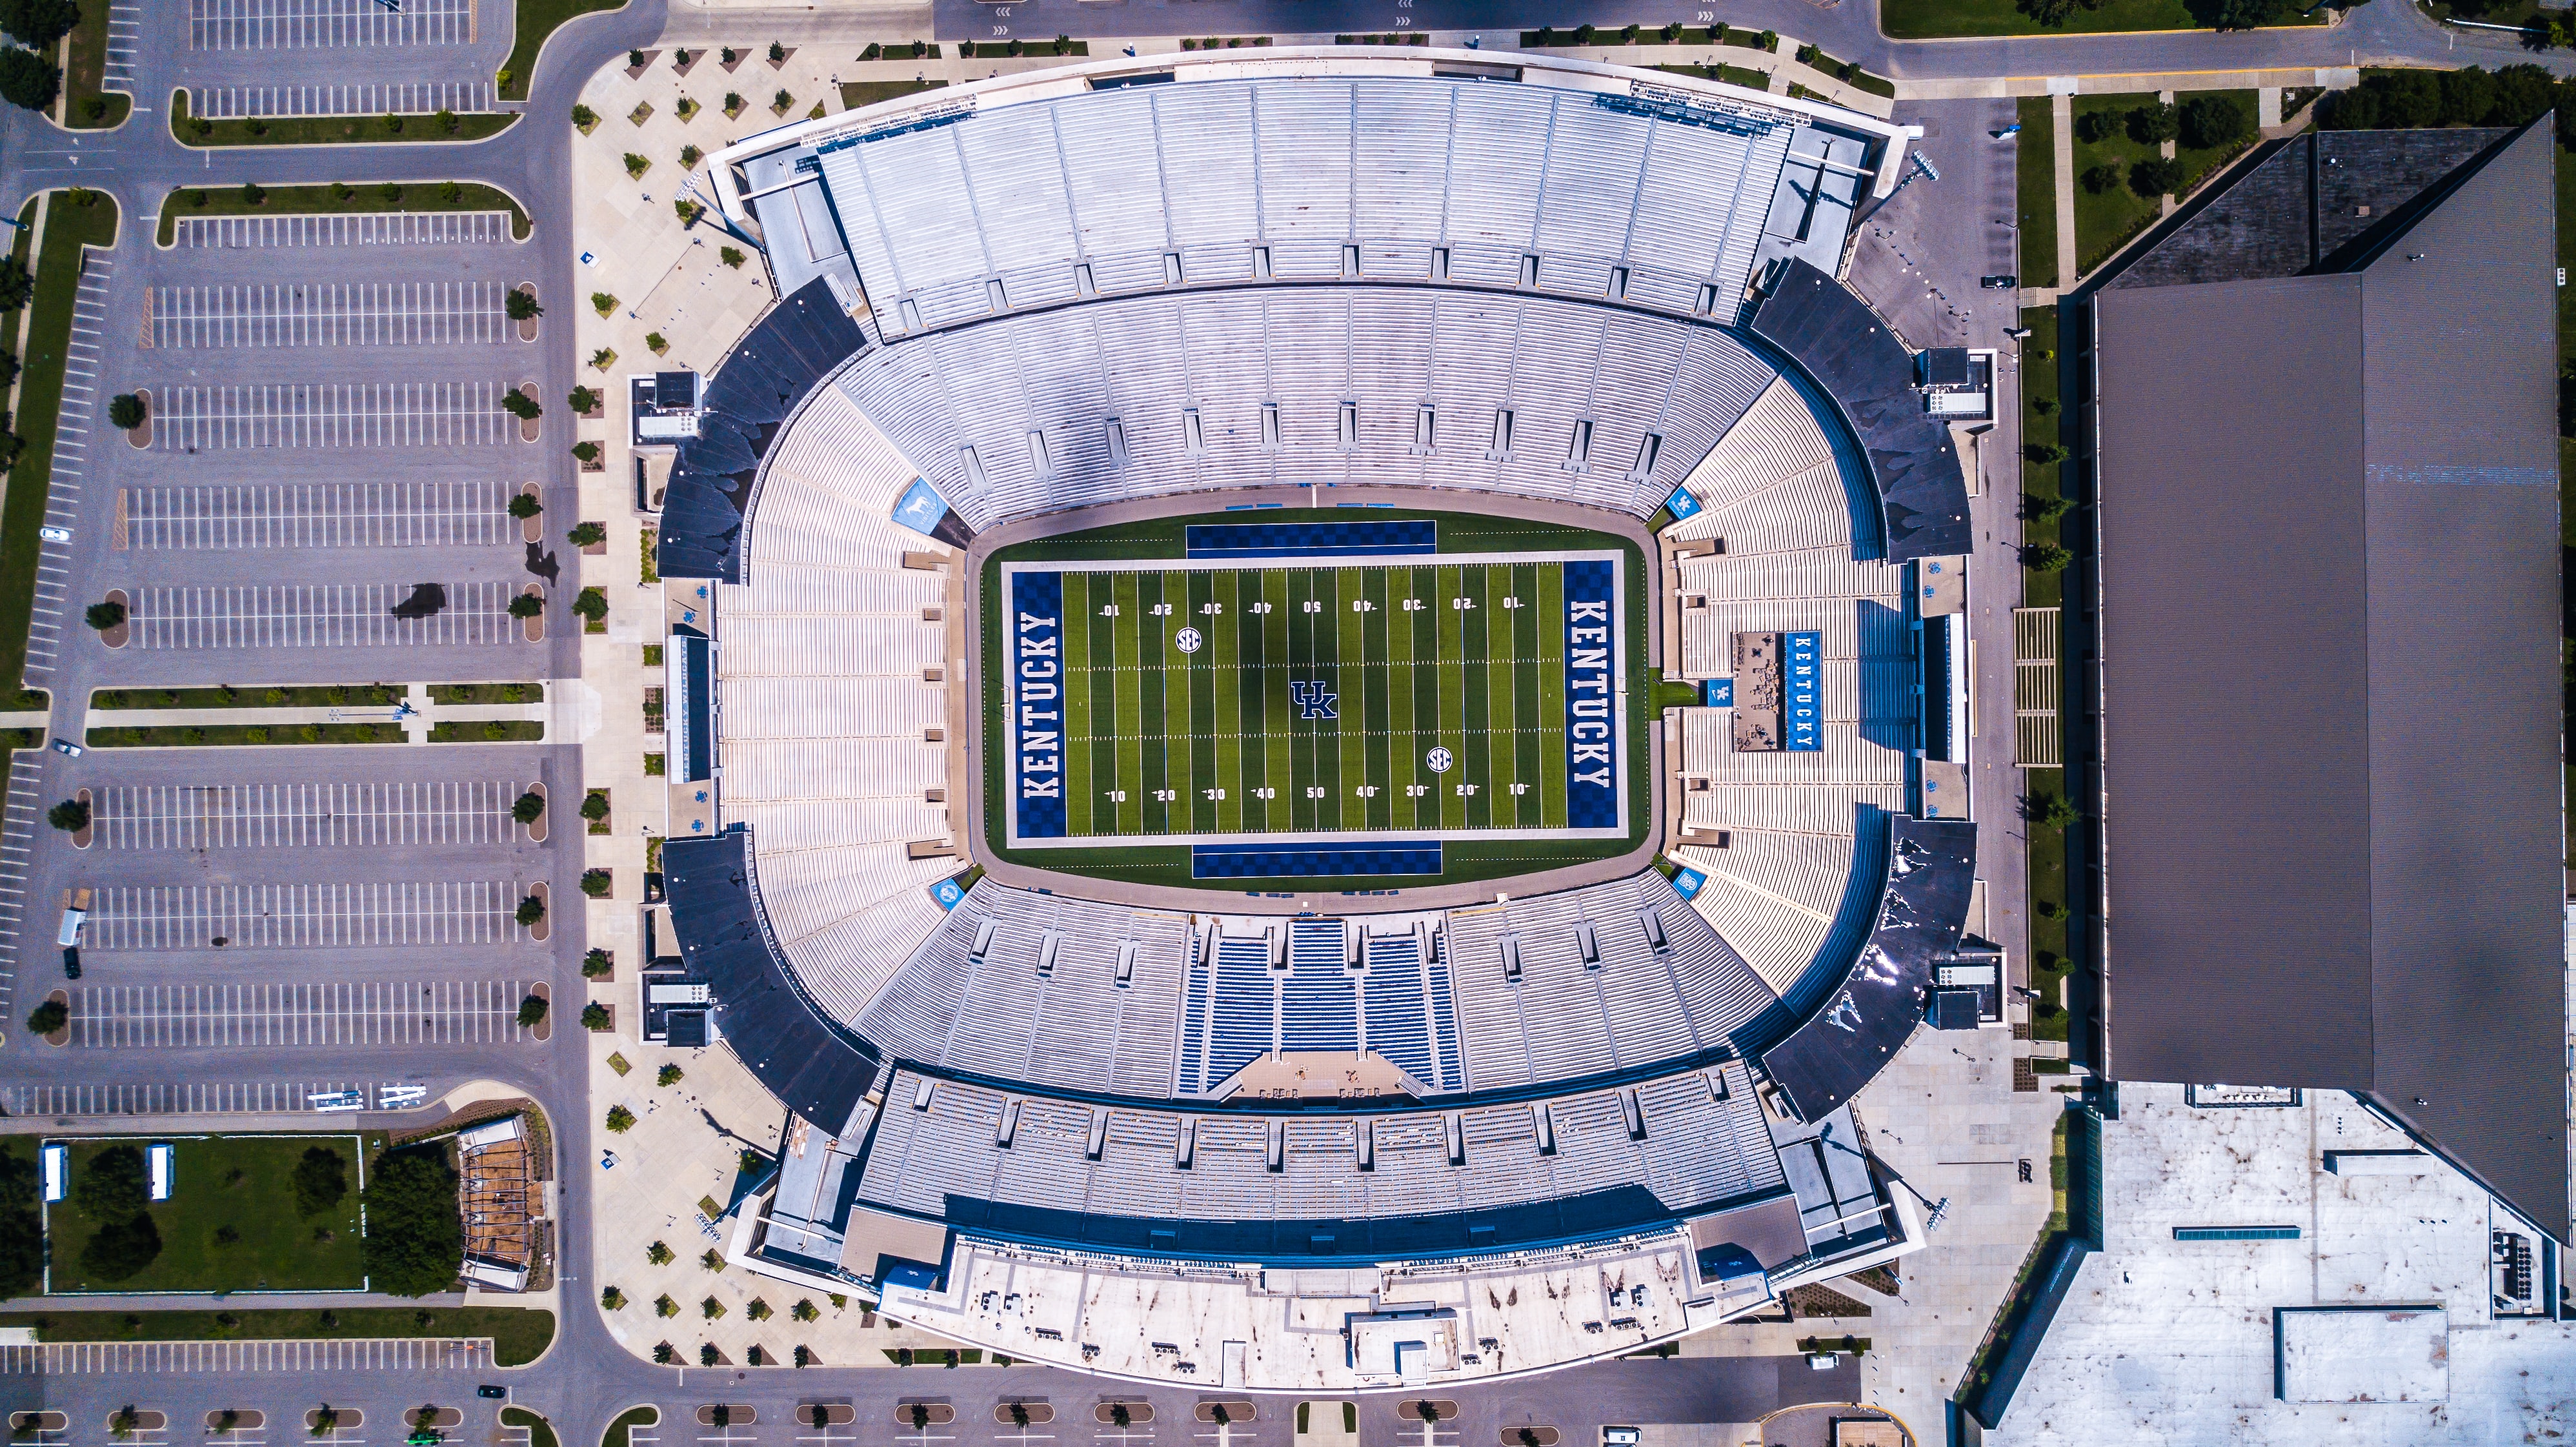 University of Kentucky Football Stadium